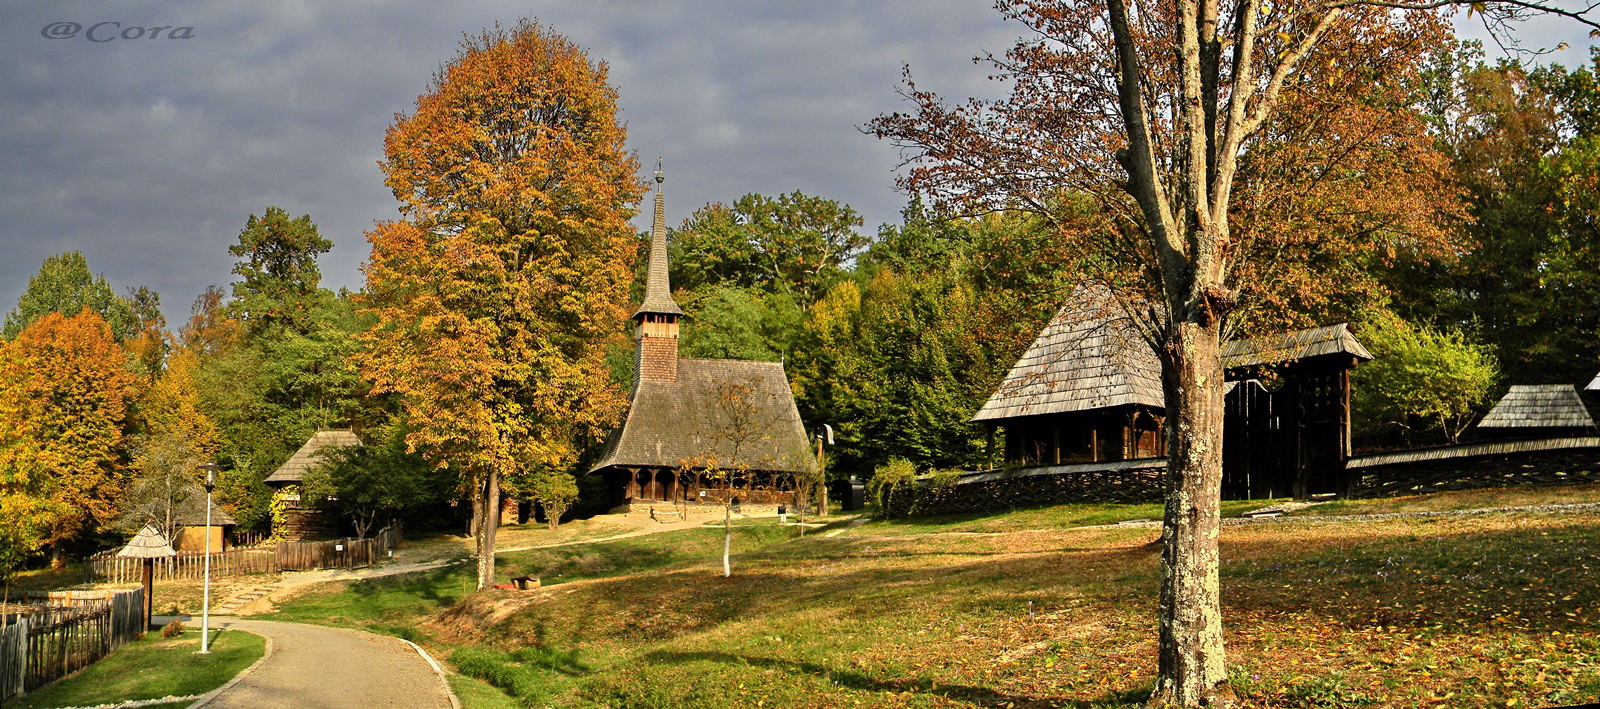 muzeul-satului-sibiu-53.